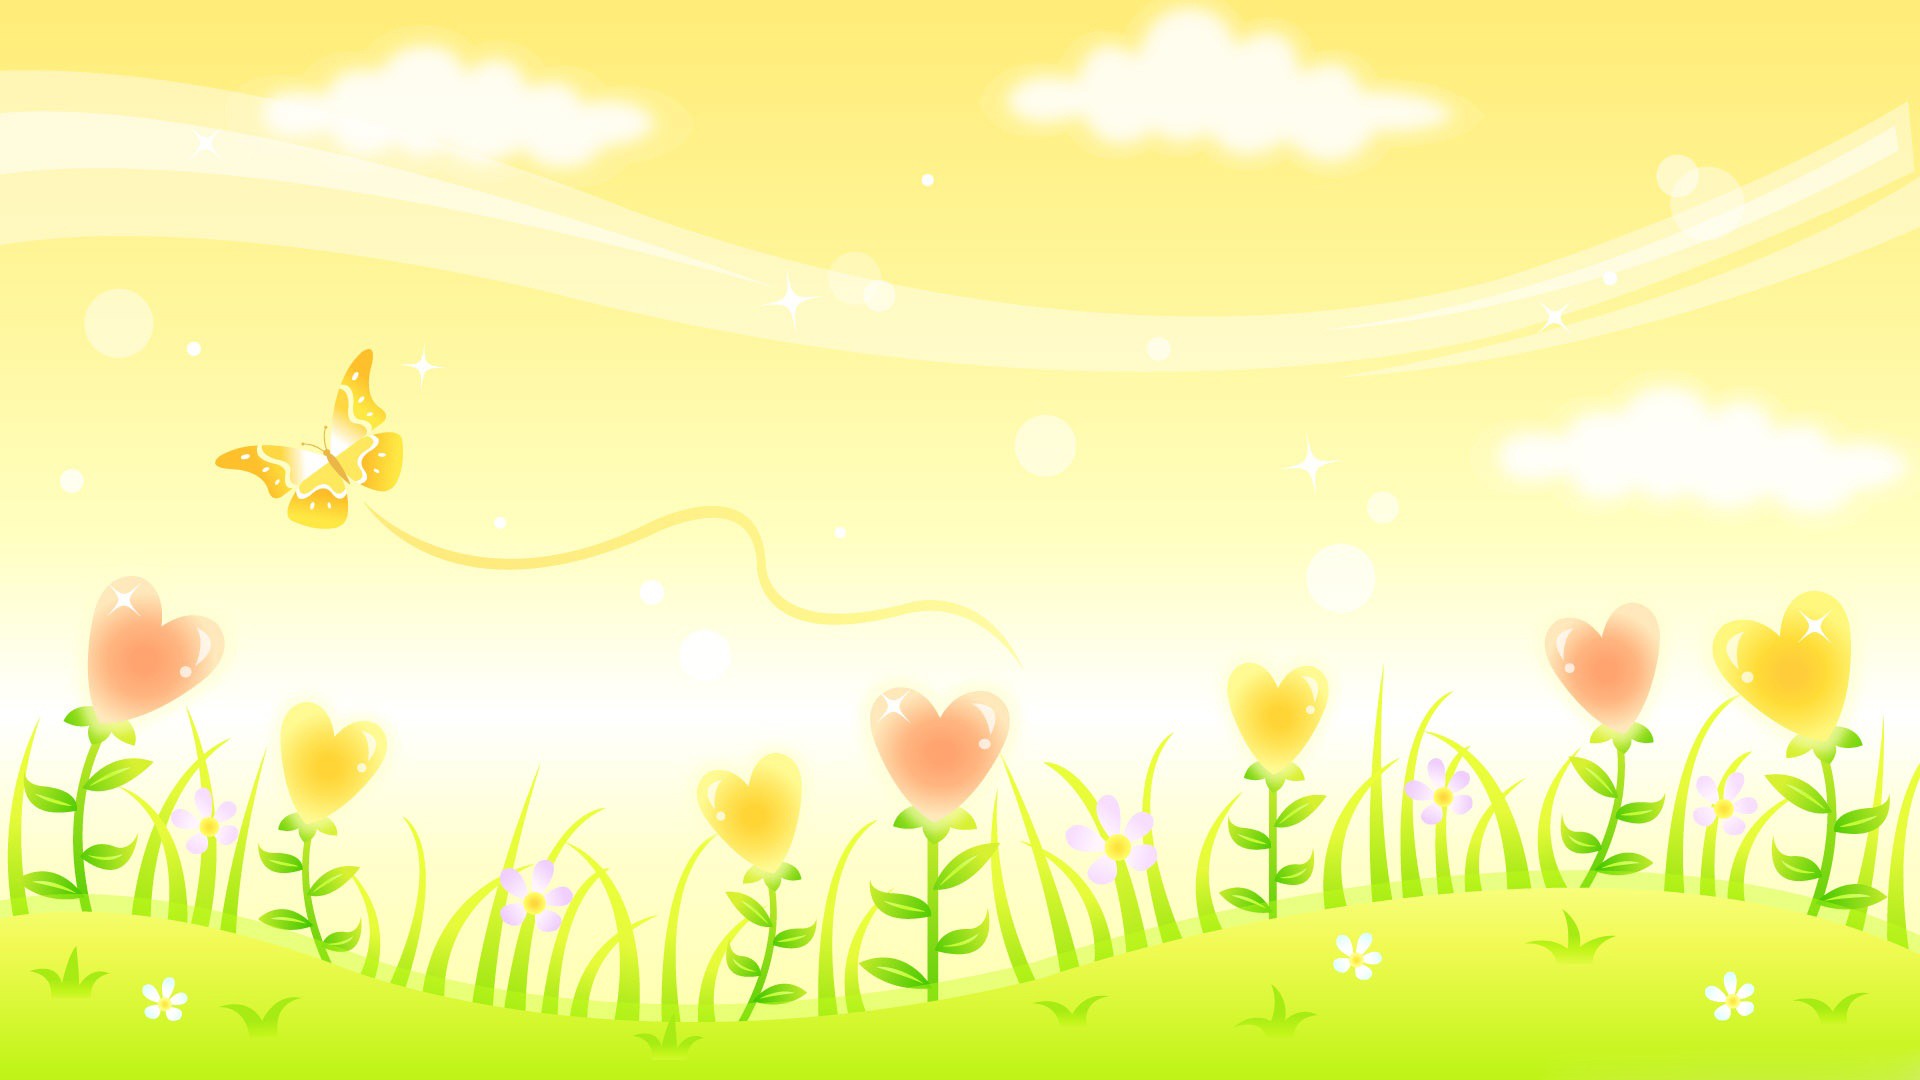 행복한 바탕 화면 배경 무늬,초록,노랑,주황색,목초지,봄